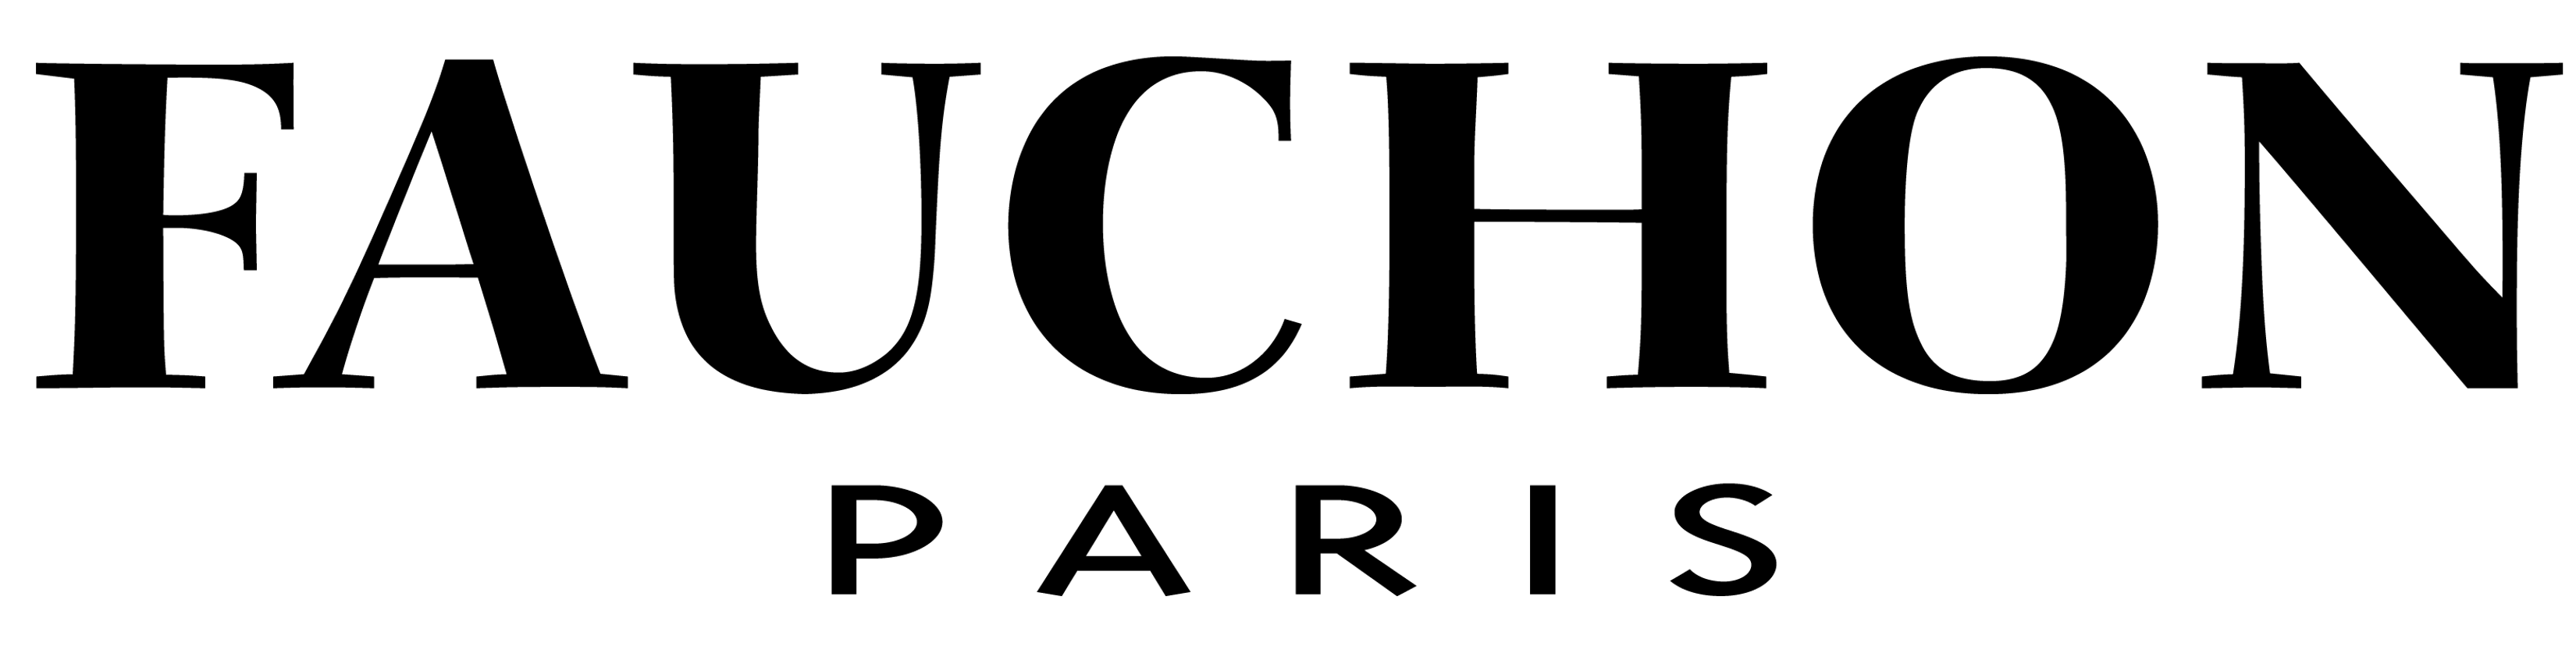 Fauchon logo, logotype